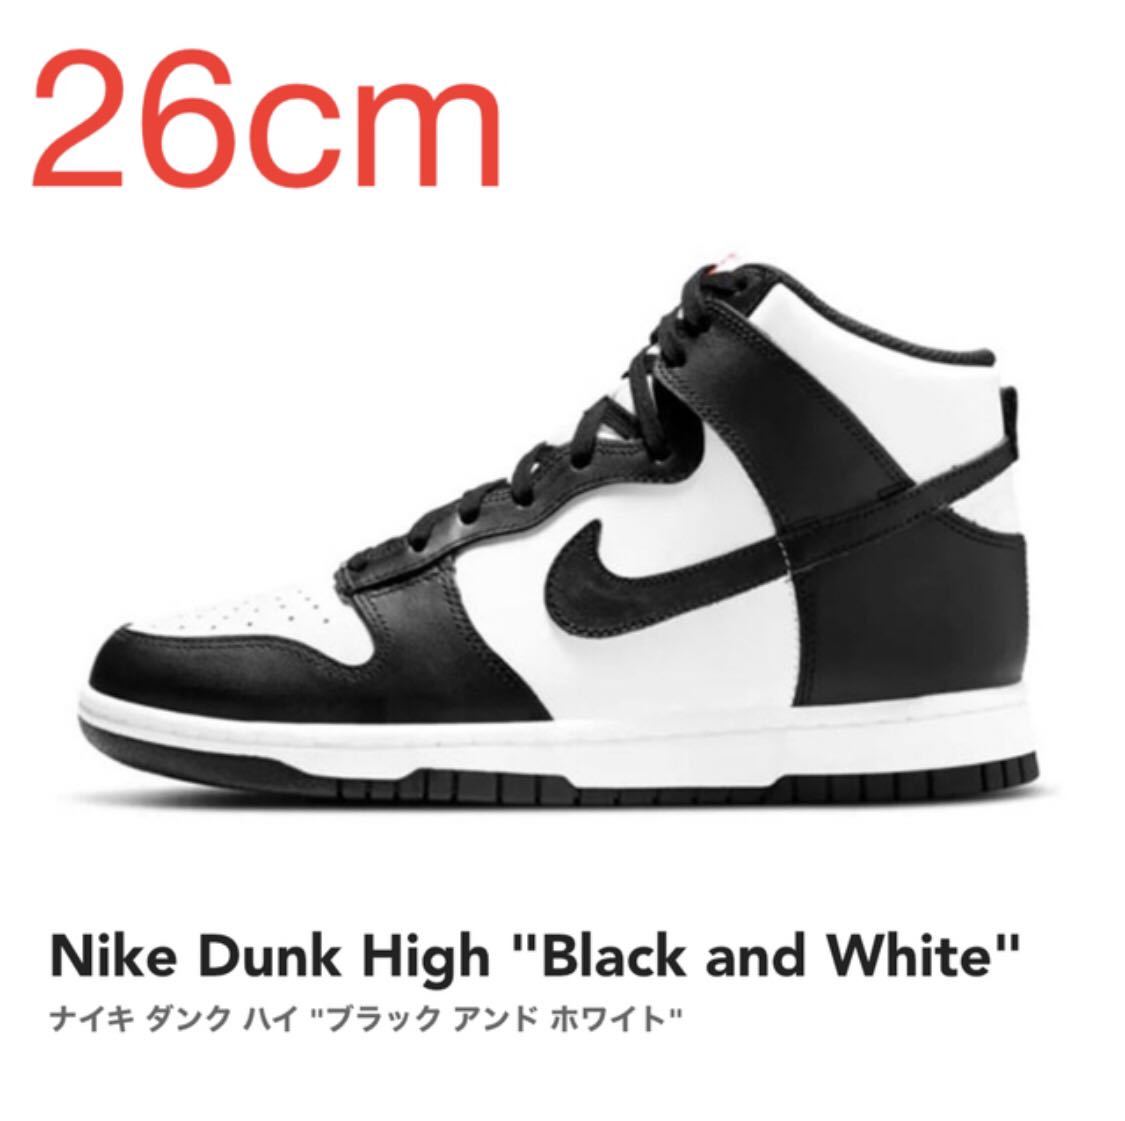 ノーリター】 Nike Dunk High Black and White ナイキ ダンク ハイ ブラック アンド ホワイト DD1399-103  26cm